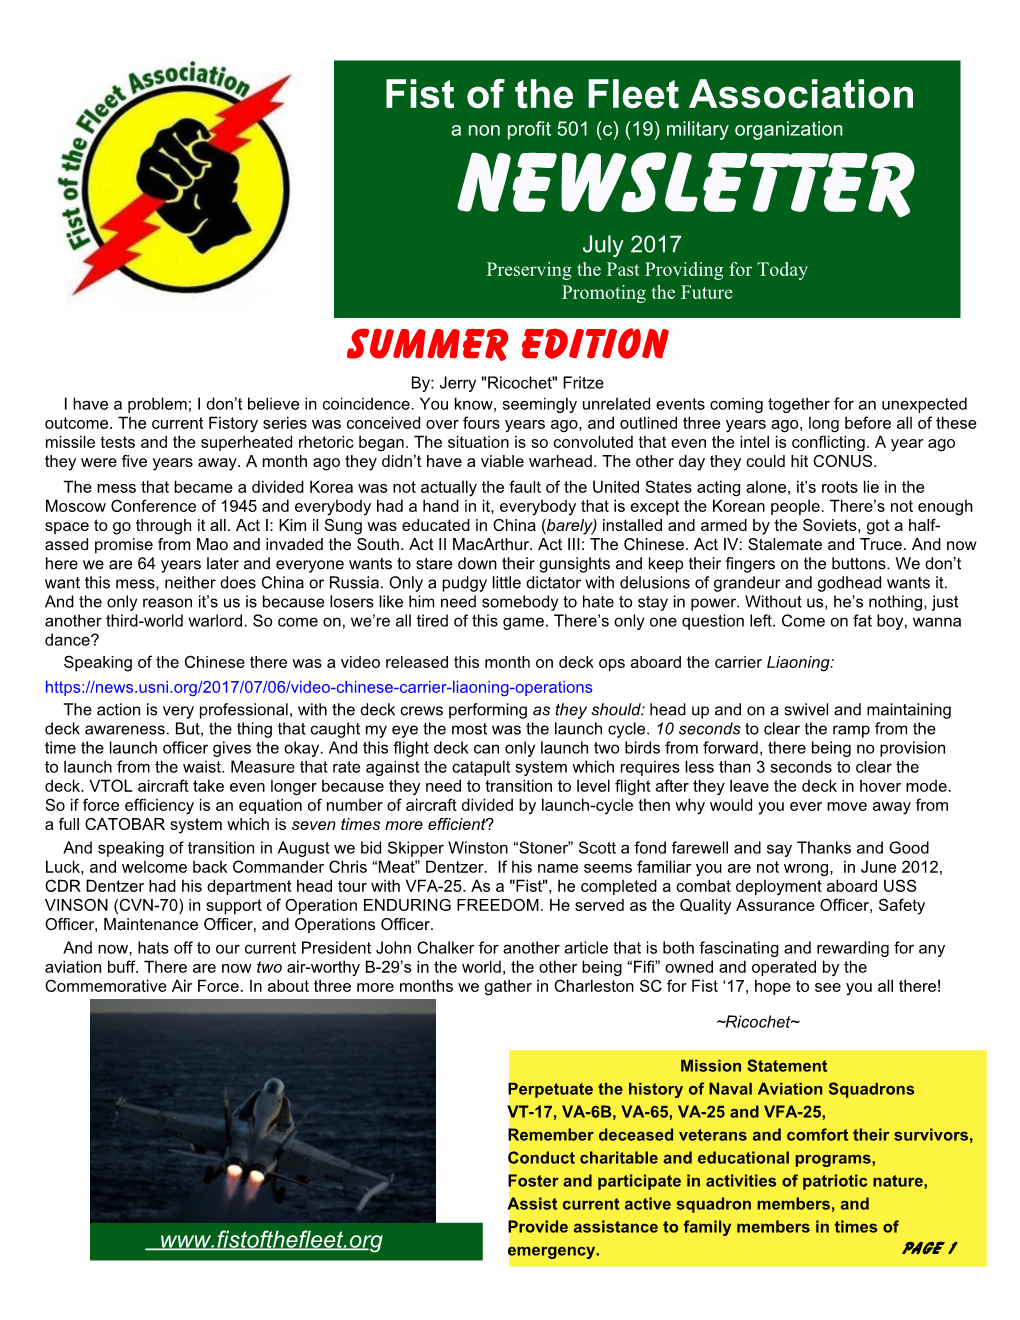 Summer 2017 Newsletter